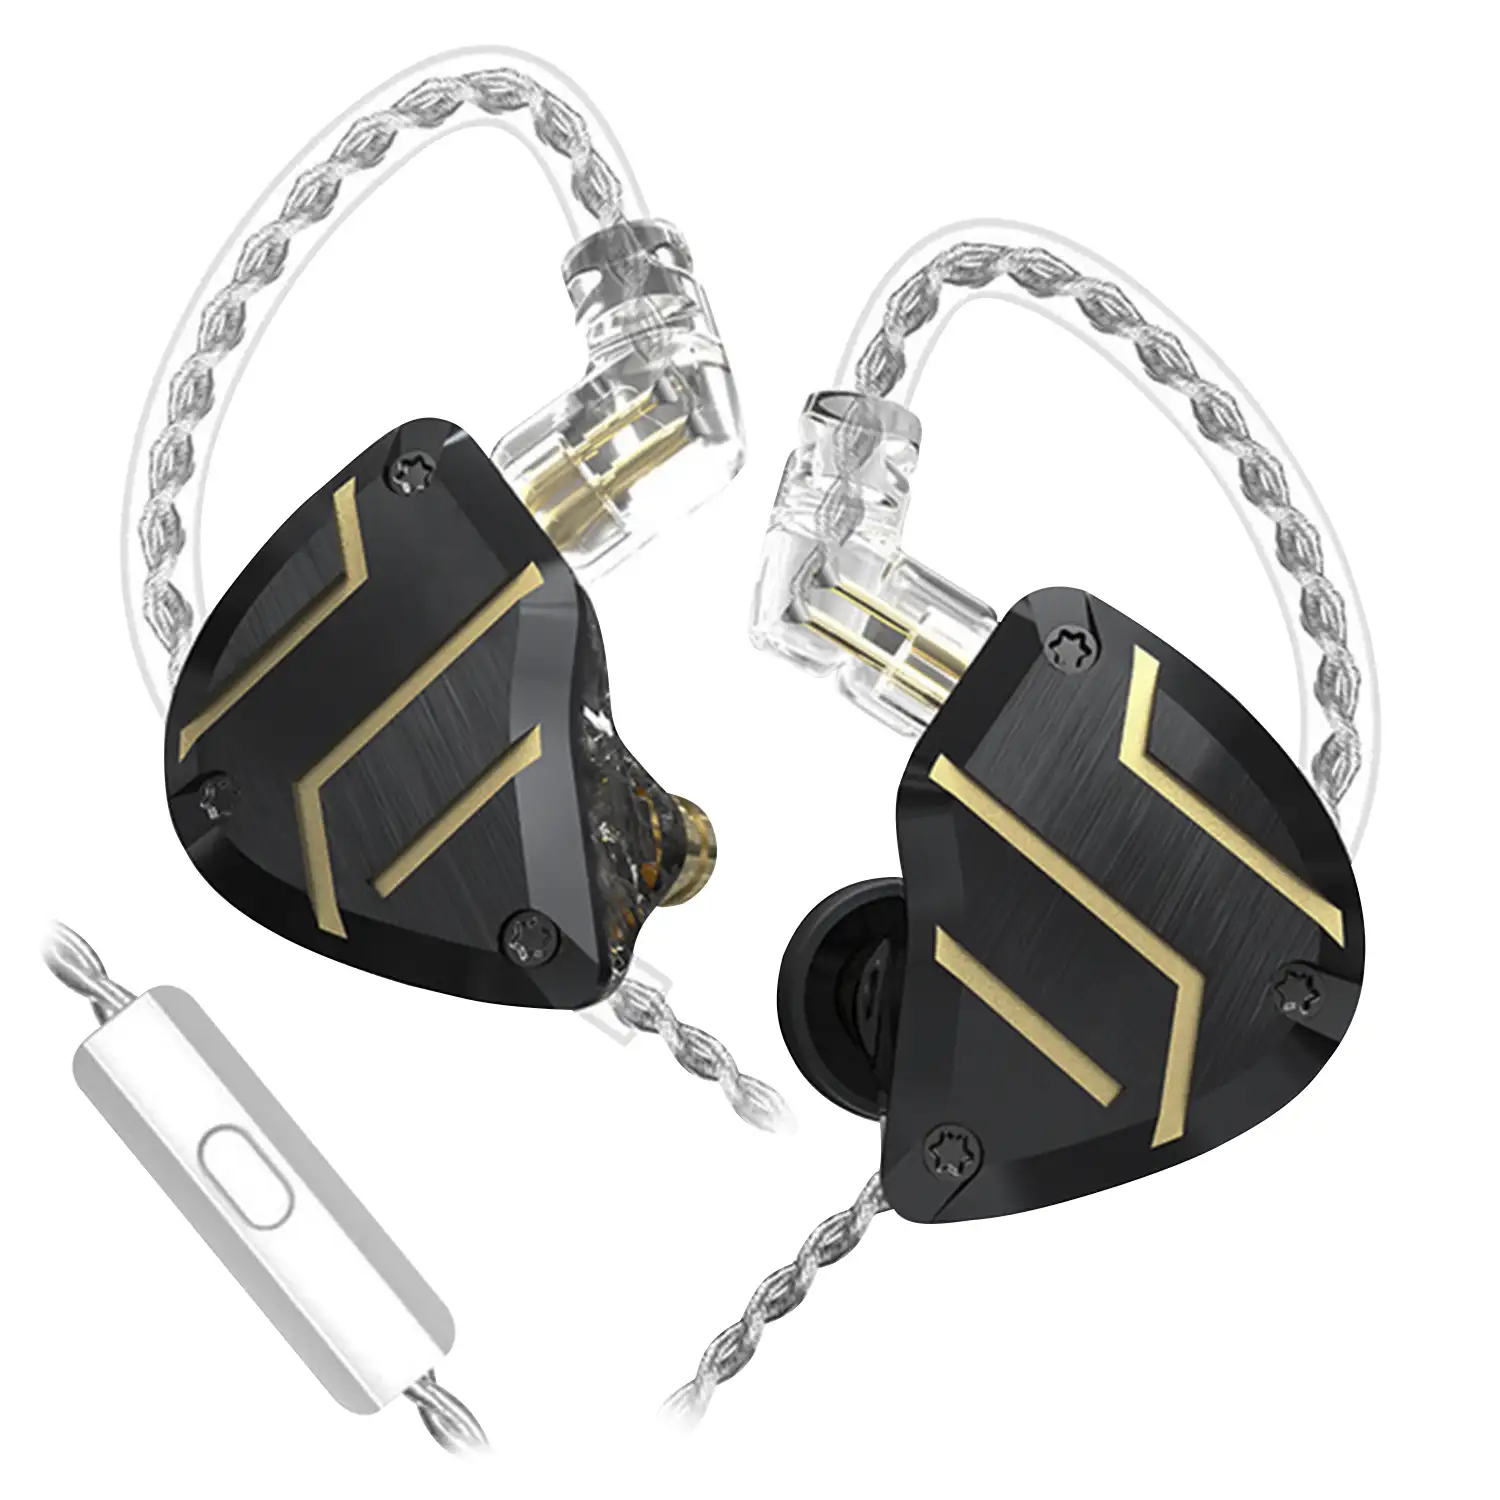 Auriculares híbridos in-ear CCA C10 PRO de alta fidelidad. 4 controladores de armadura balanceada + 1 controlador dinámico. Cable con micro, conexión jack 3,5mm.